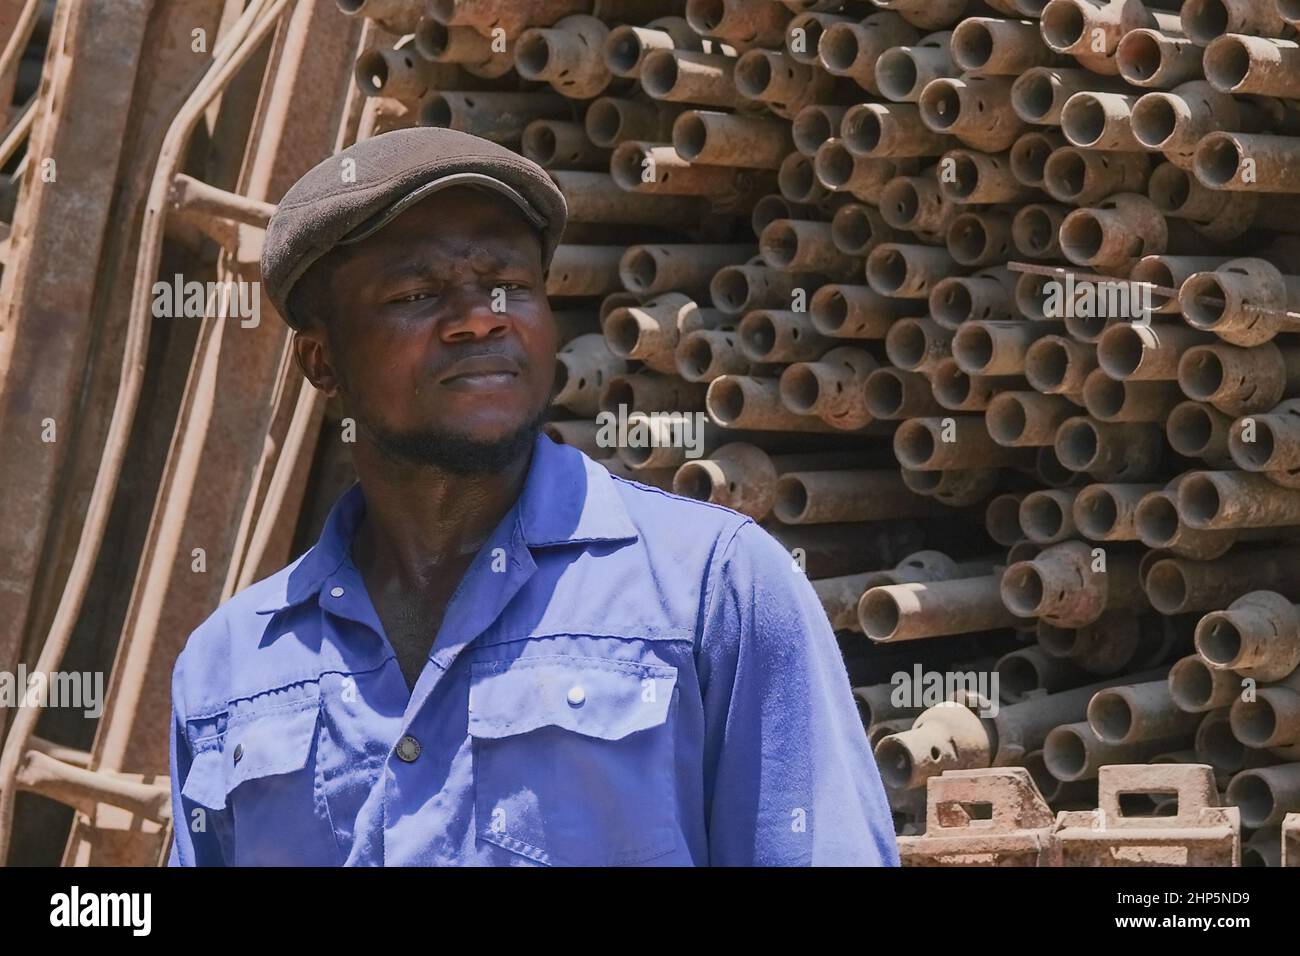 Fuoco selettivo di fronte al nero africano uomo operaio indossando uniforme blu, lavorando per rottame metallo magazzino di approvvigionamento per il riciclaggio. Abu Dhabi, Emirati Arabi Uniti Foto Stock